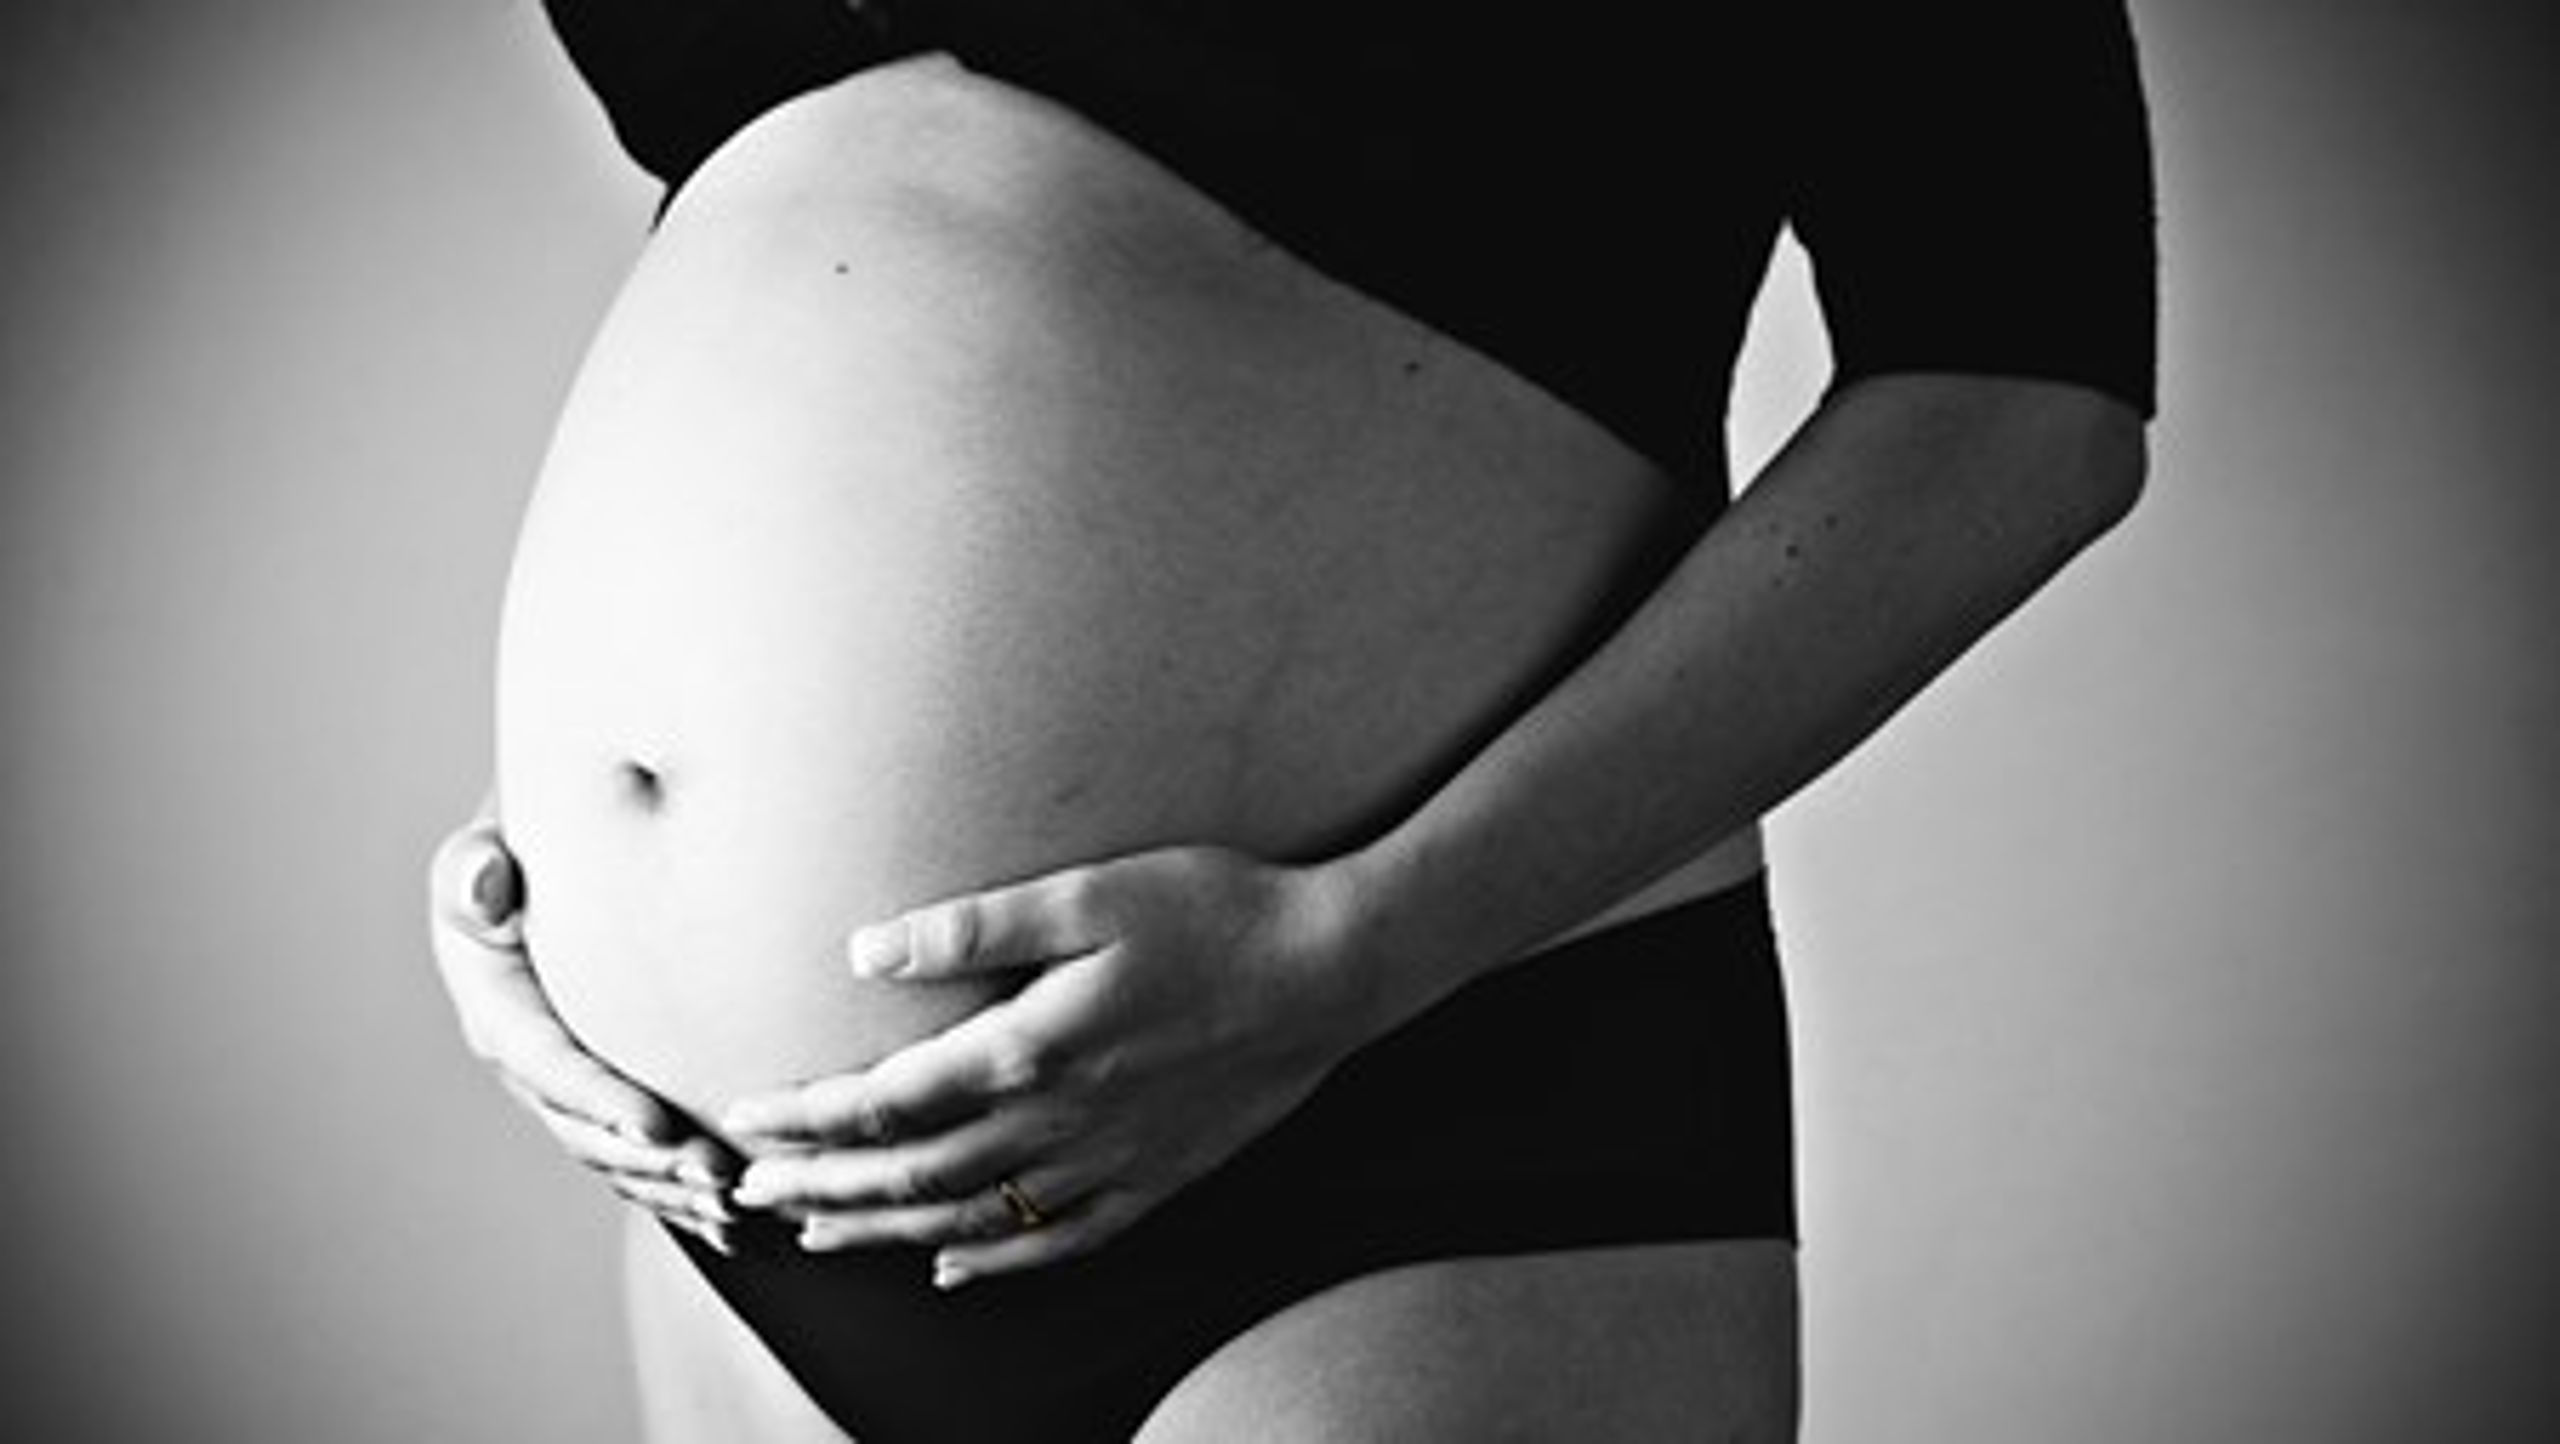 Gravide kvinder er den gruppe, som umiddelbart lader til at have størst økonomisk gavn af telemedicinsk hjemmemonitorering. Det viser slutevalueringen af storskalaprojektet KIH.